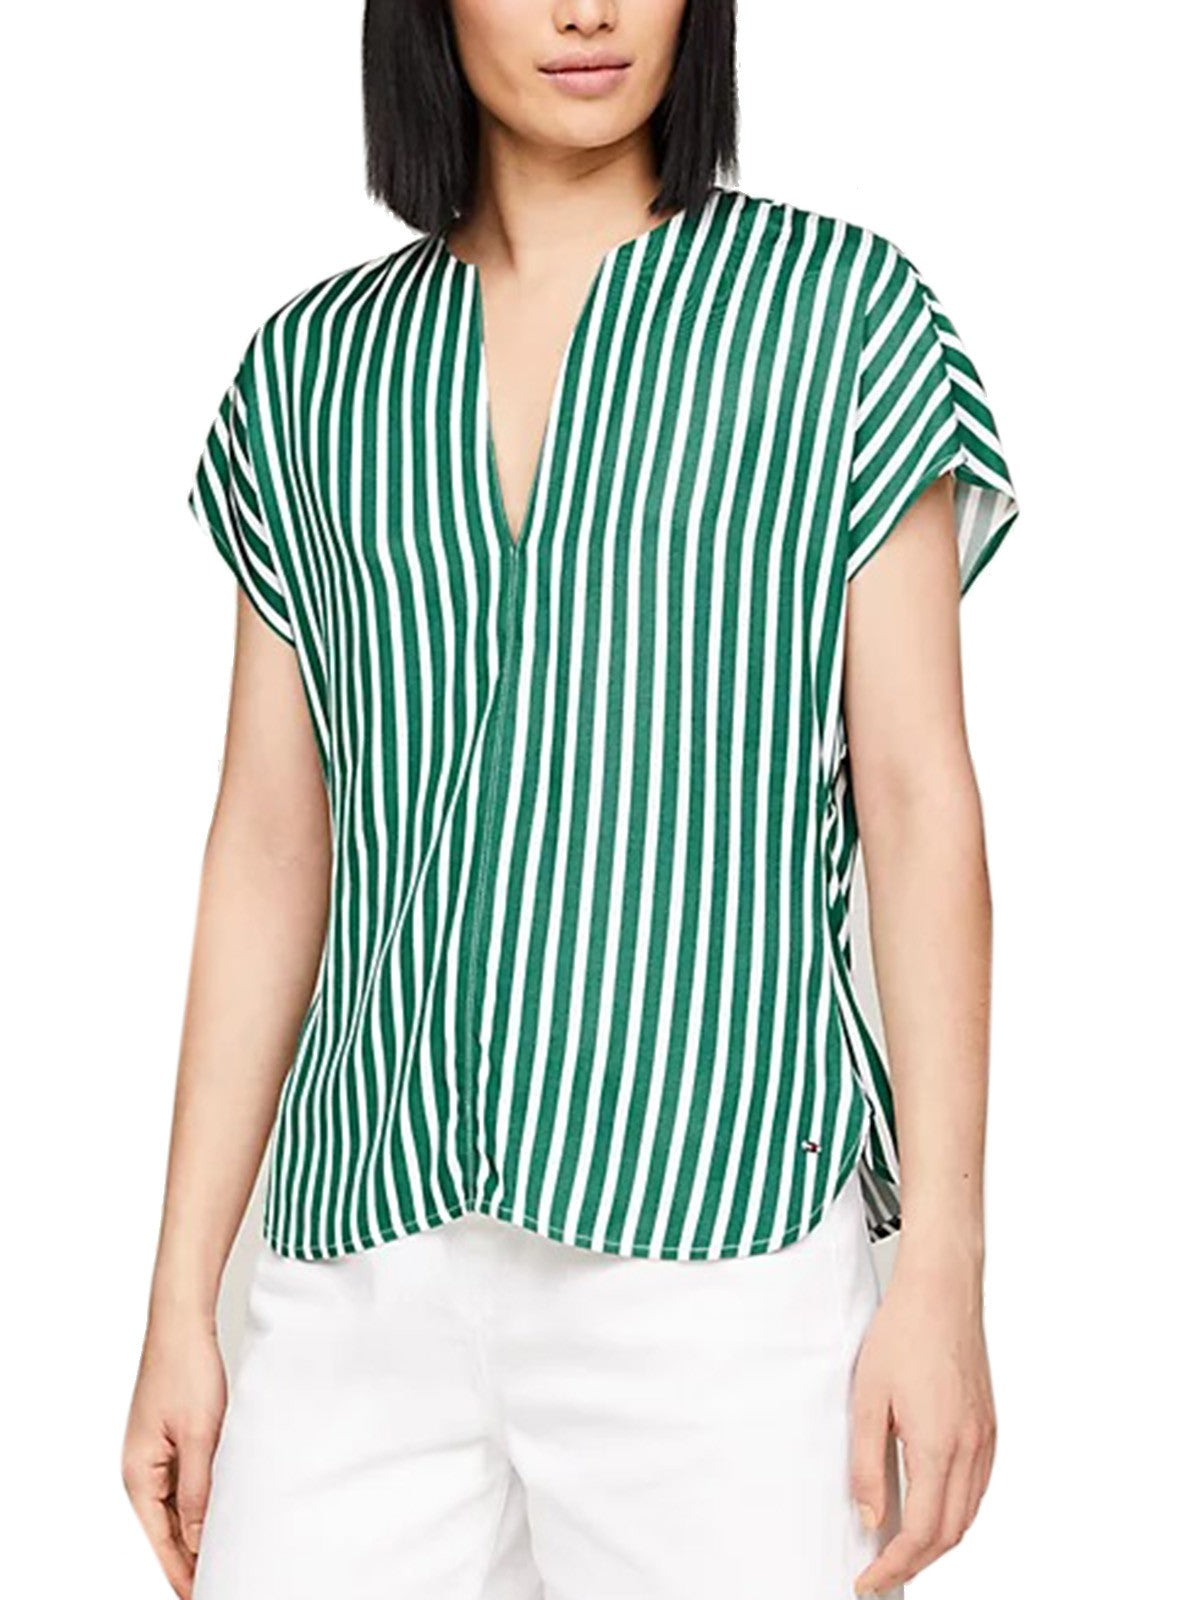 Bluse e camicie Donna Tommy Hilfiger - Blusa A Righe Con Maniche Corte - Verde